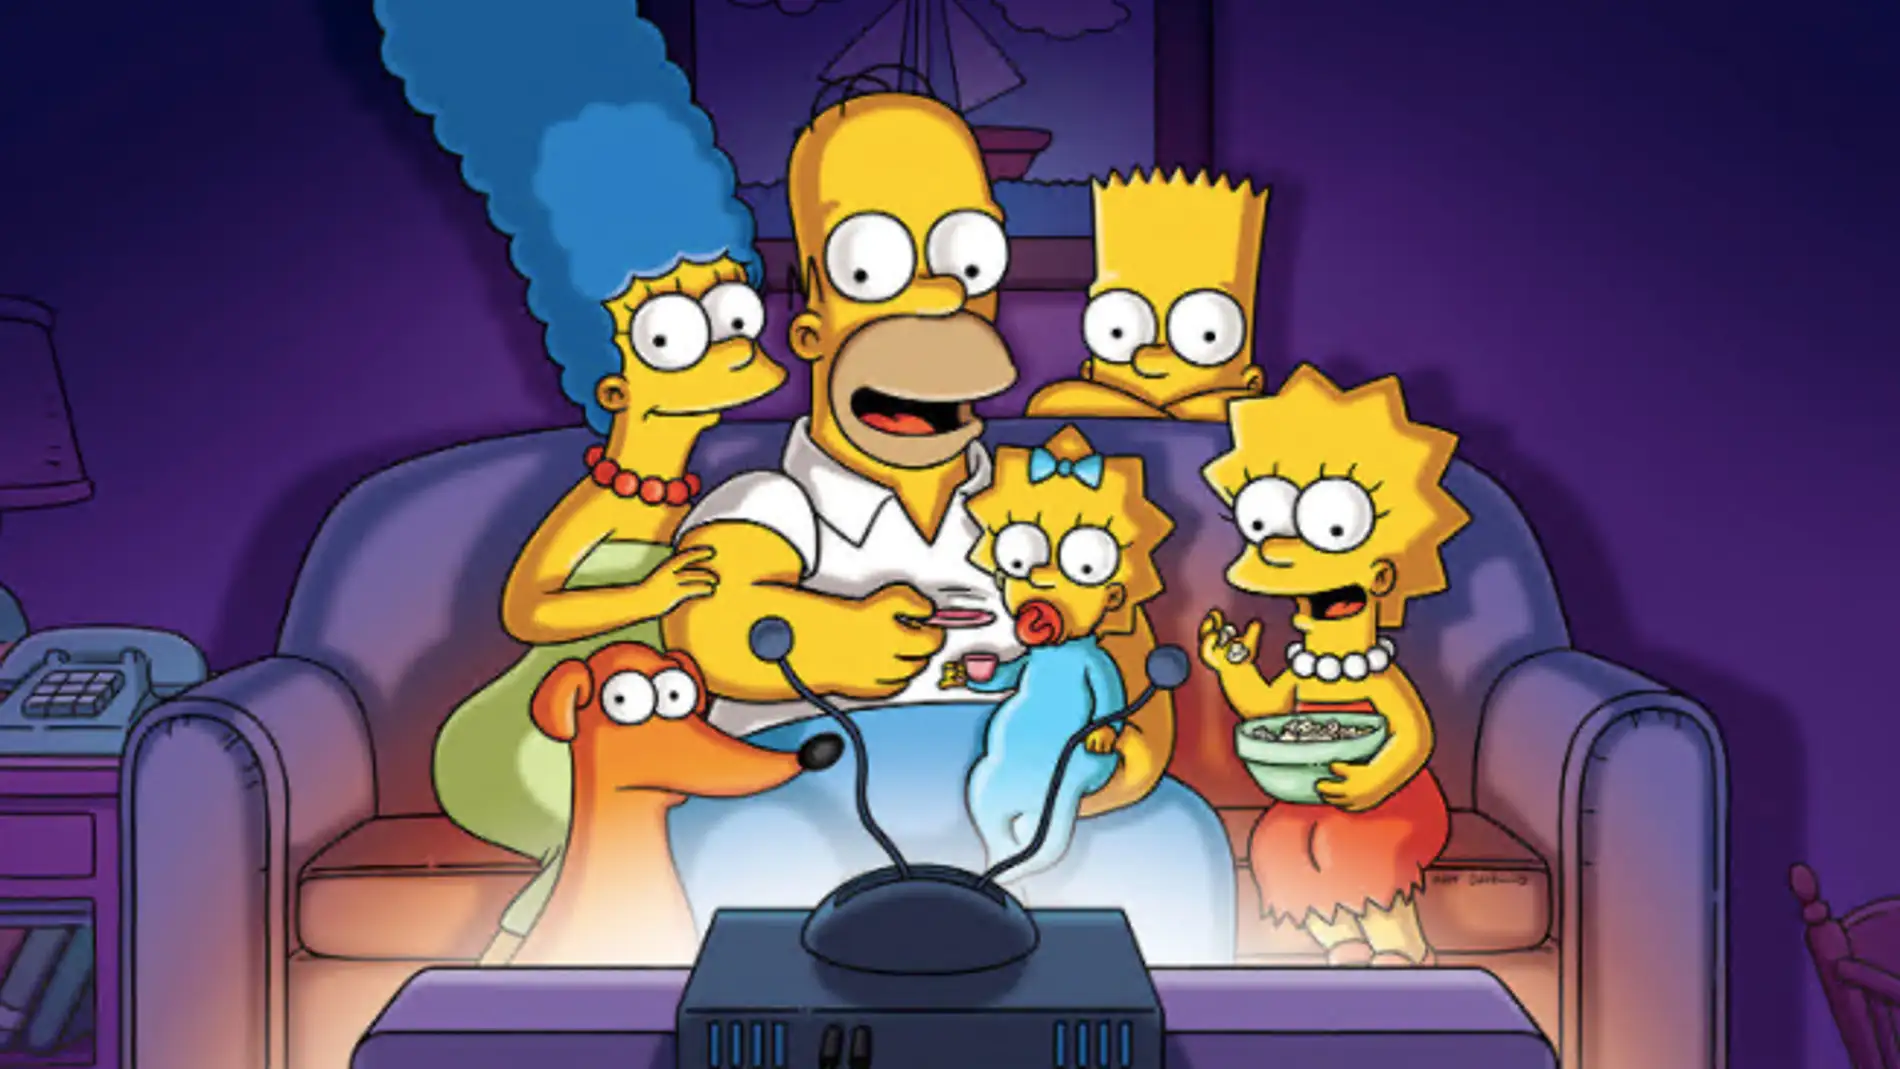 'Los Simpson'